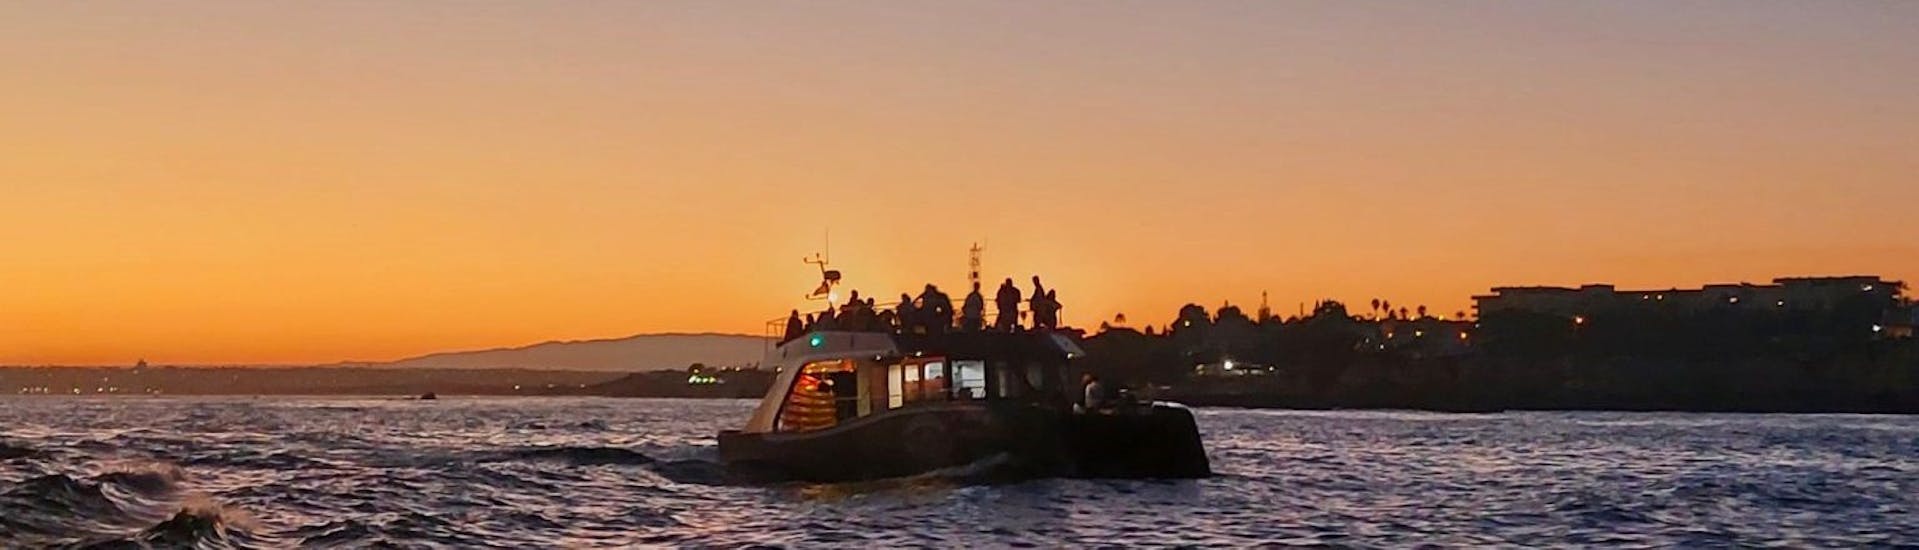 Das Boot während dem Sonnenuntergang über dem Meer bei der Katamarantour bei Sonnenuntergang zur Benagil-Höhle.